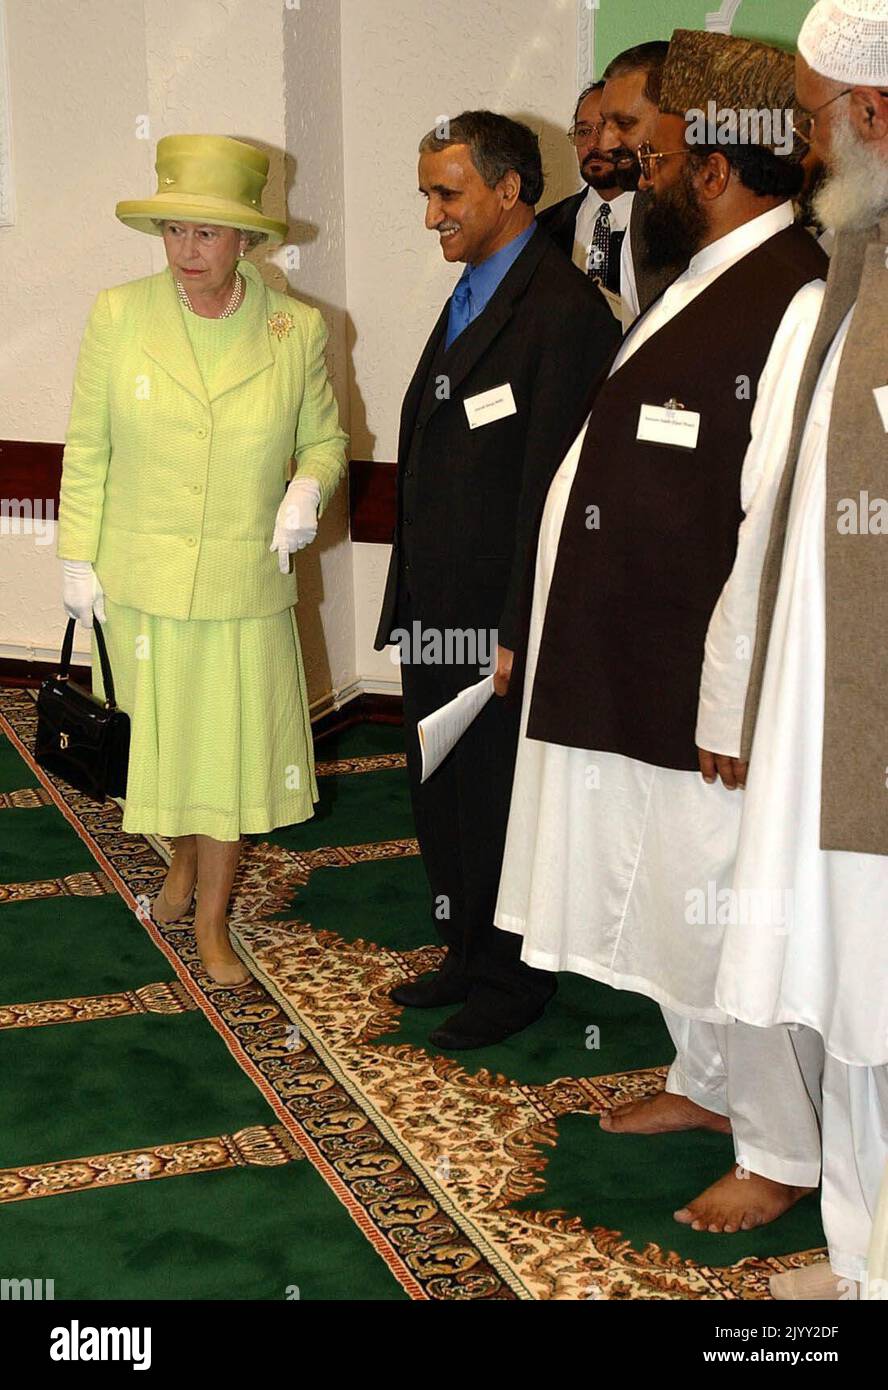 Foto del archivo fechada el 31/7/2002 de la Reina Isabel II entrando en la Sala de Oración durante una visita al Centro Islámico de Scunthorpe después de quitarse los zapatos. Era la primera vez que la Reina visitaba una mezquita en el Reino Unido. Fecha de emisión: Jueves 8 de septiembre de 2022. Foto de stock